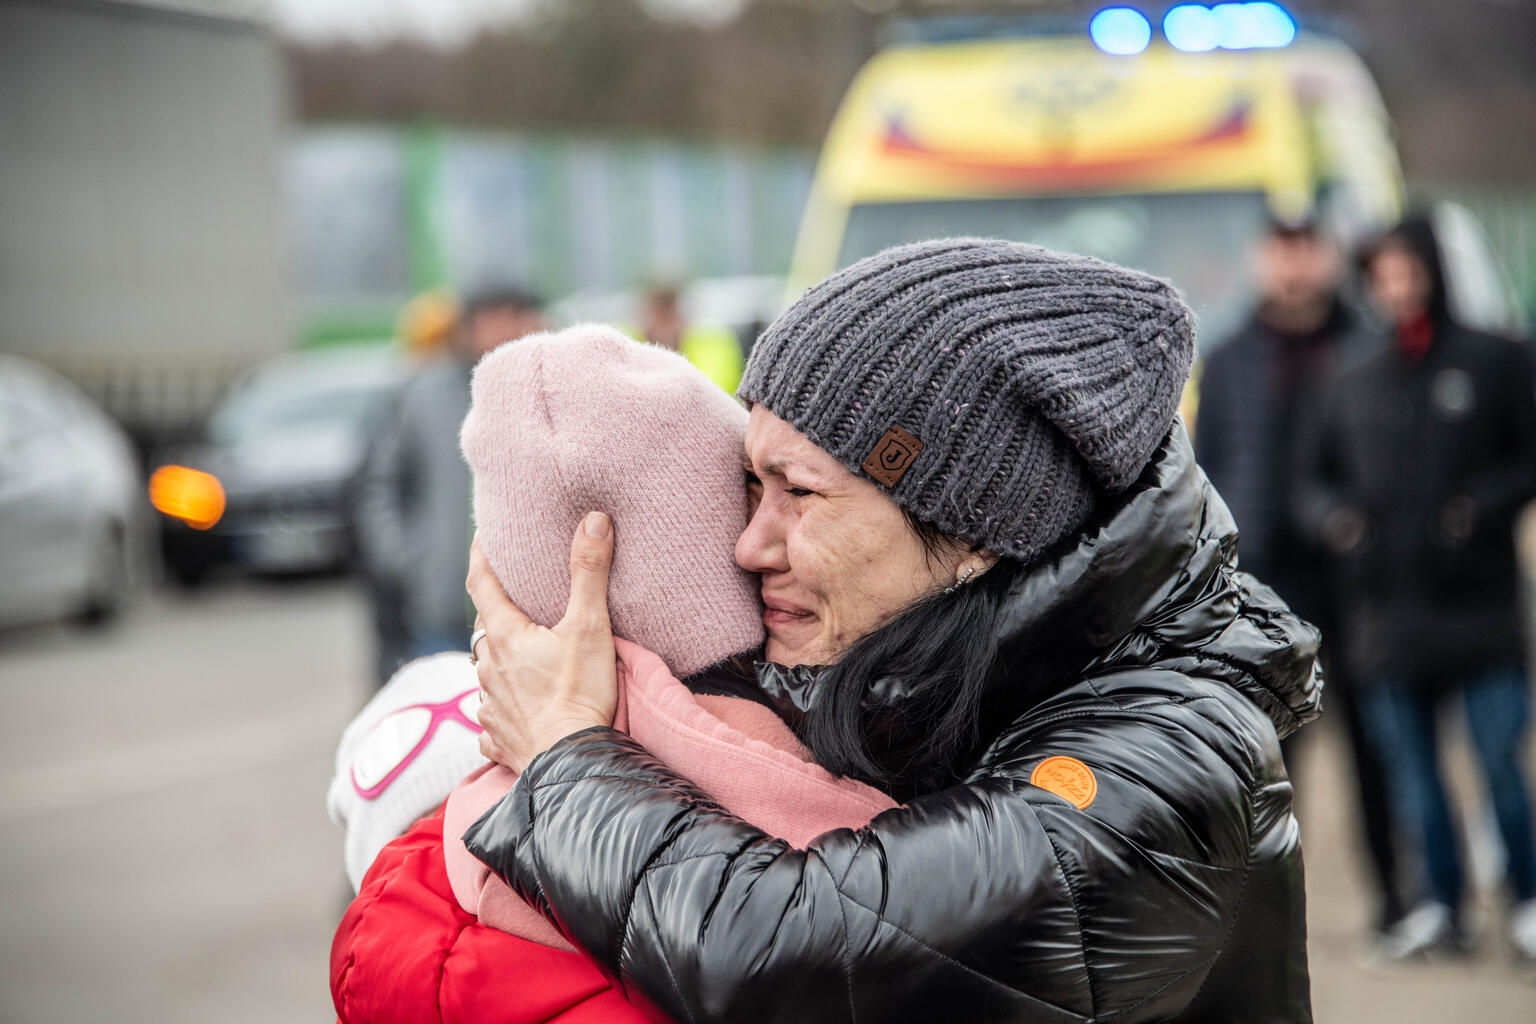 紛争が激化するウクライナから、国境を越えてポーランドにたどりついた家族。 (ポーランド、2022年3月5日撮影)